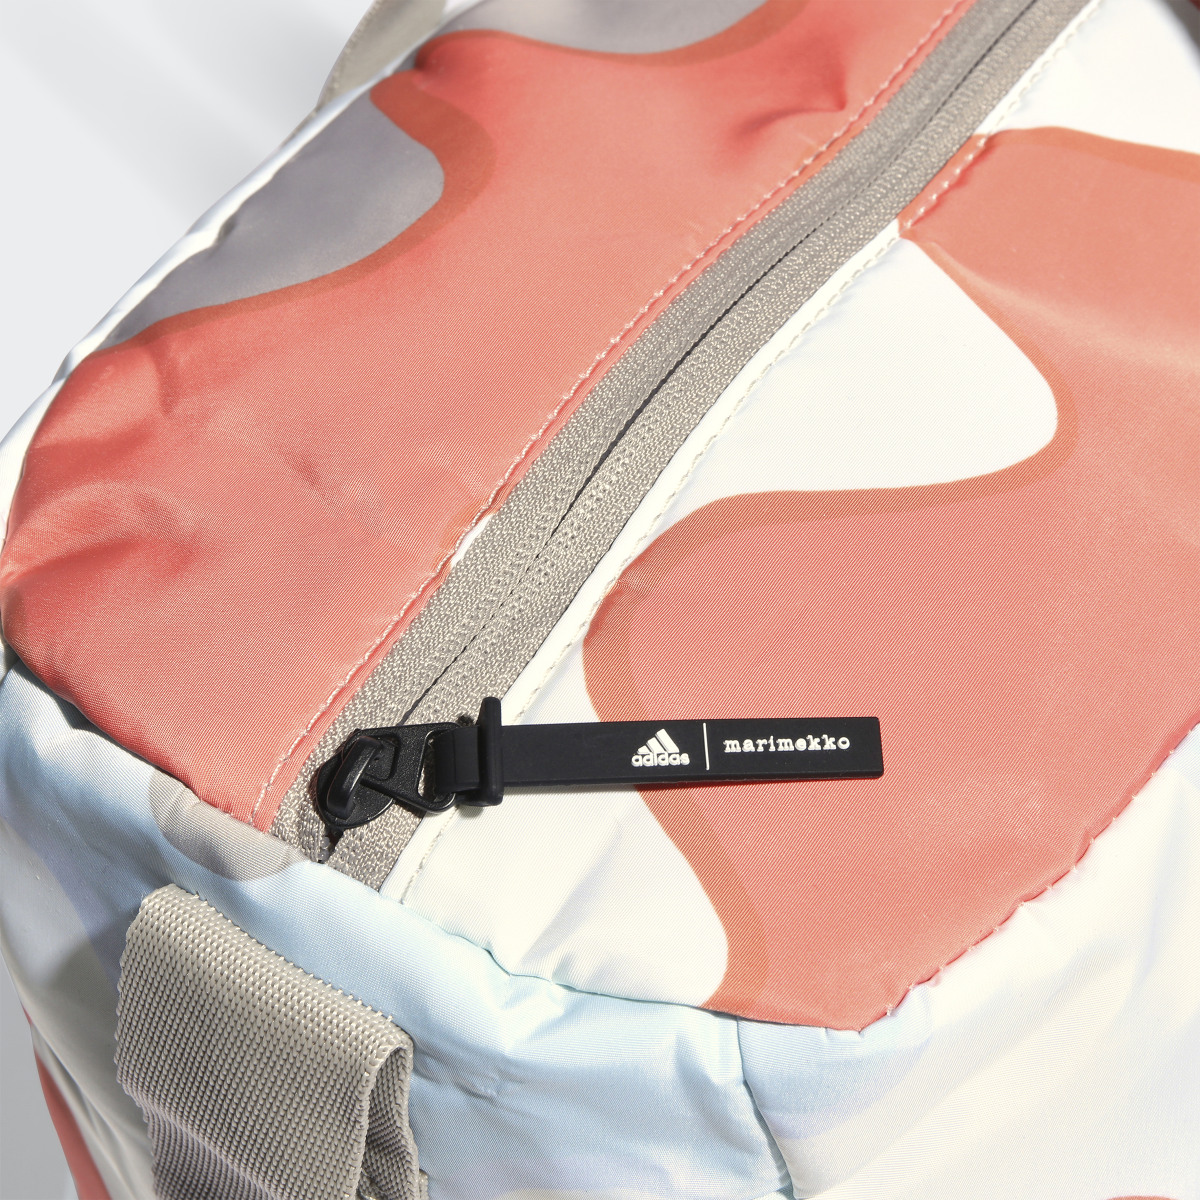 Adidas x Marimekko Shopper Designed 2 Move Training Bag. 6